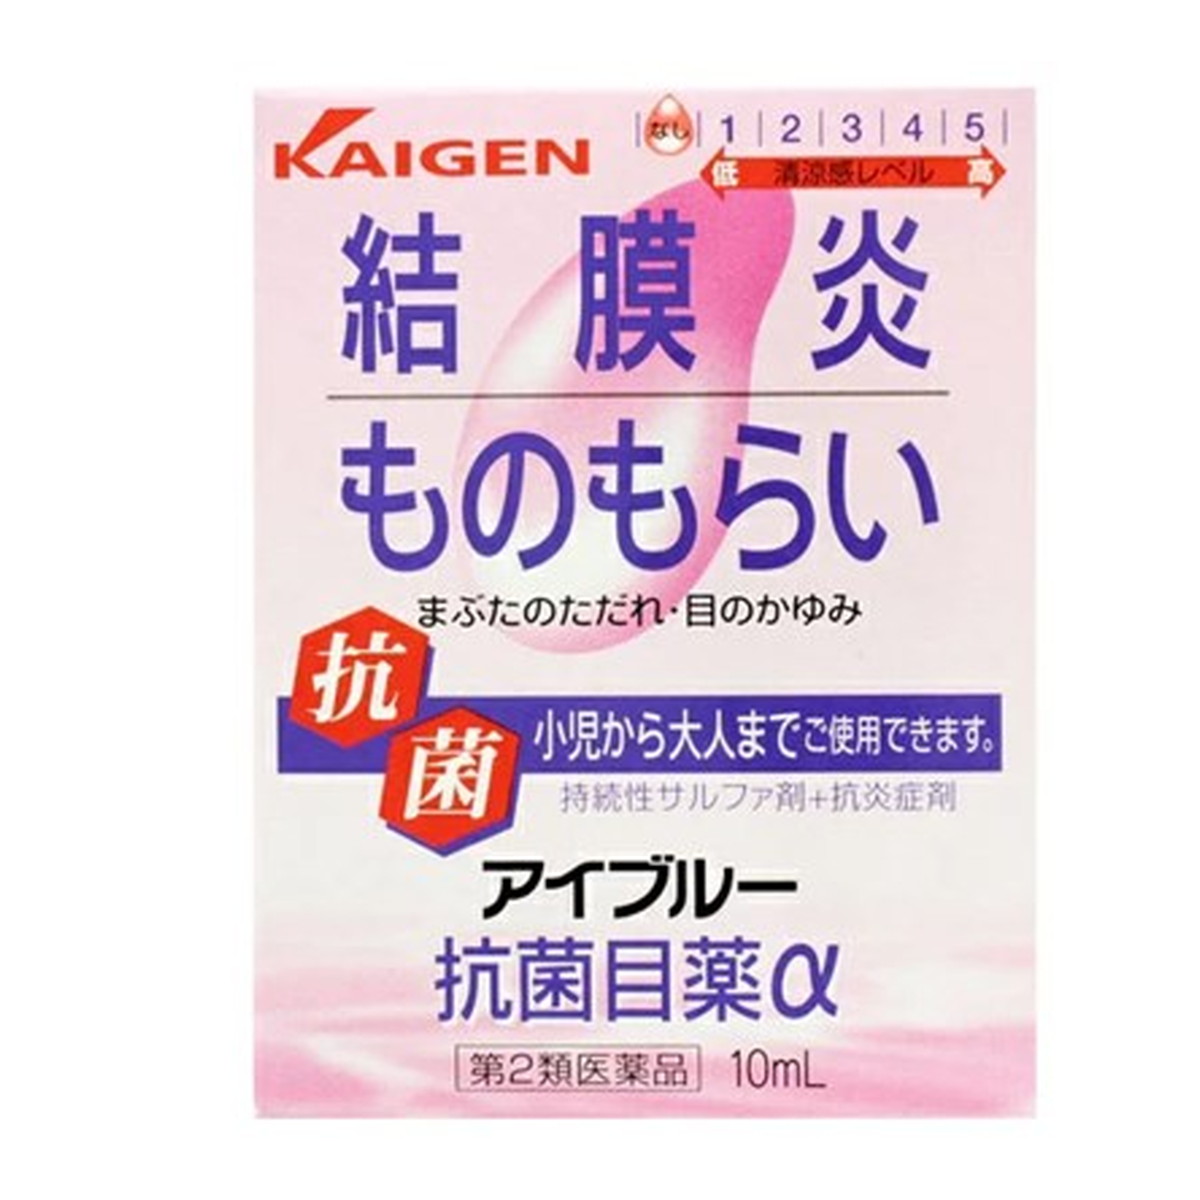 【第2類医薬品】カイゲンファーマ アイブルー 抗菌目薬α 10ml